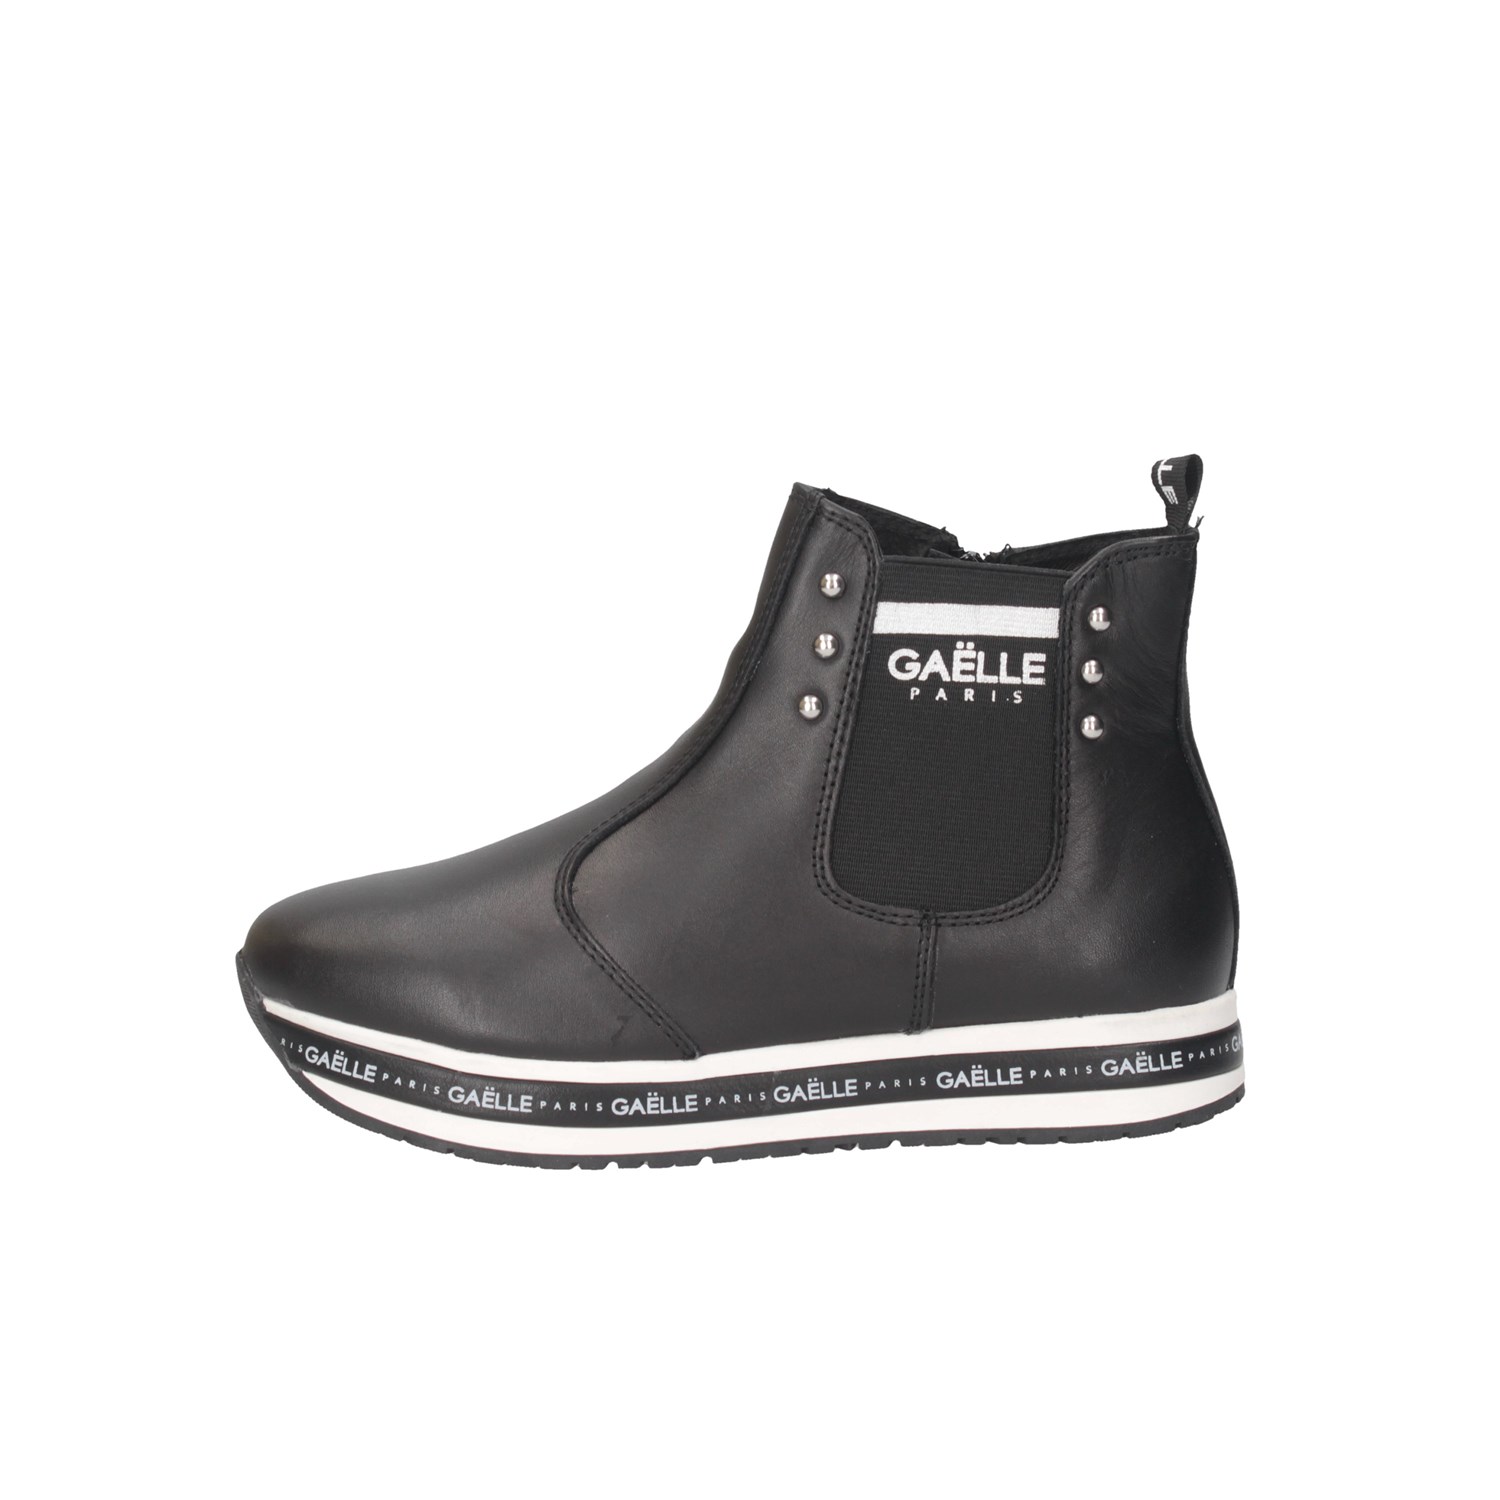 Gaelle Paris G-422A Black Shoes Woman 